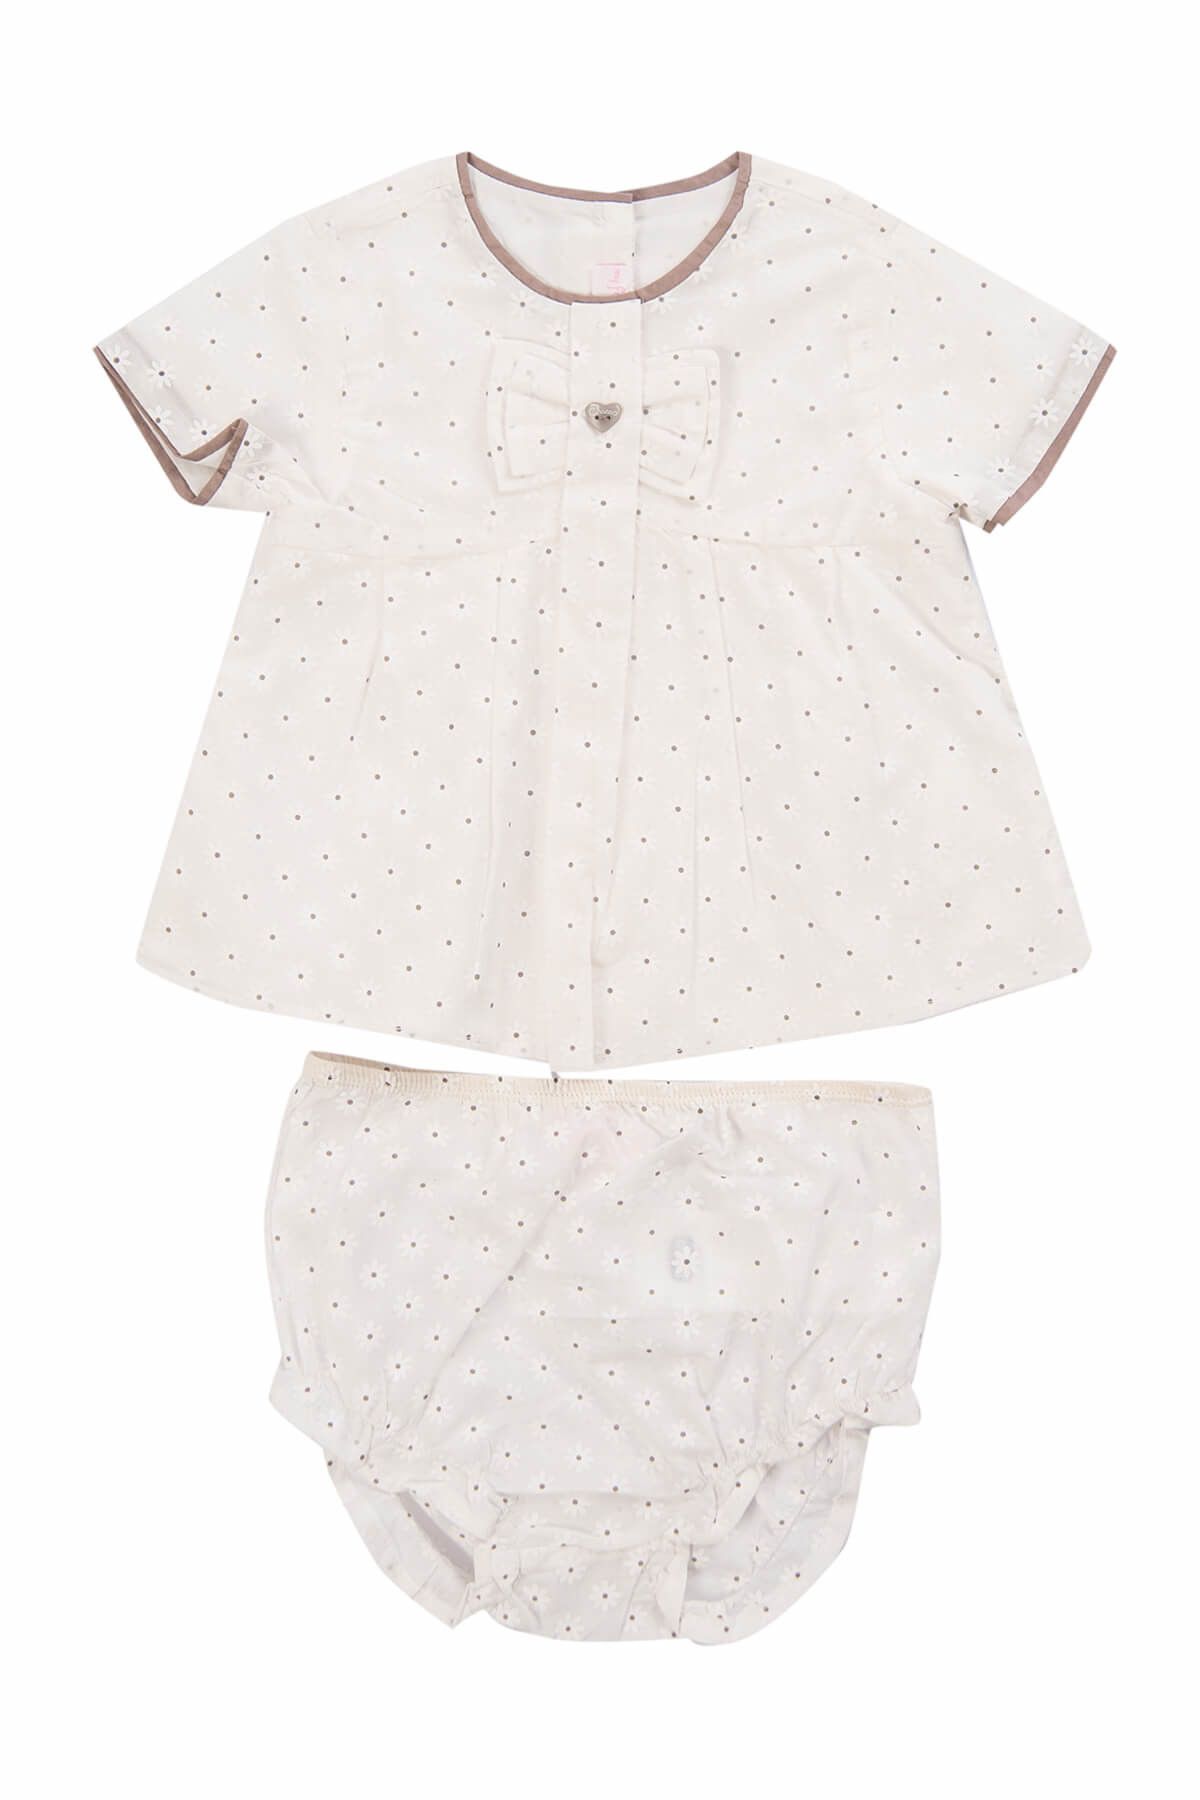 Chicco Beyaz Kız Bebek Gömlek + Külot Takım 09066461000000